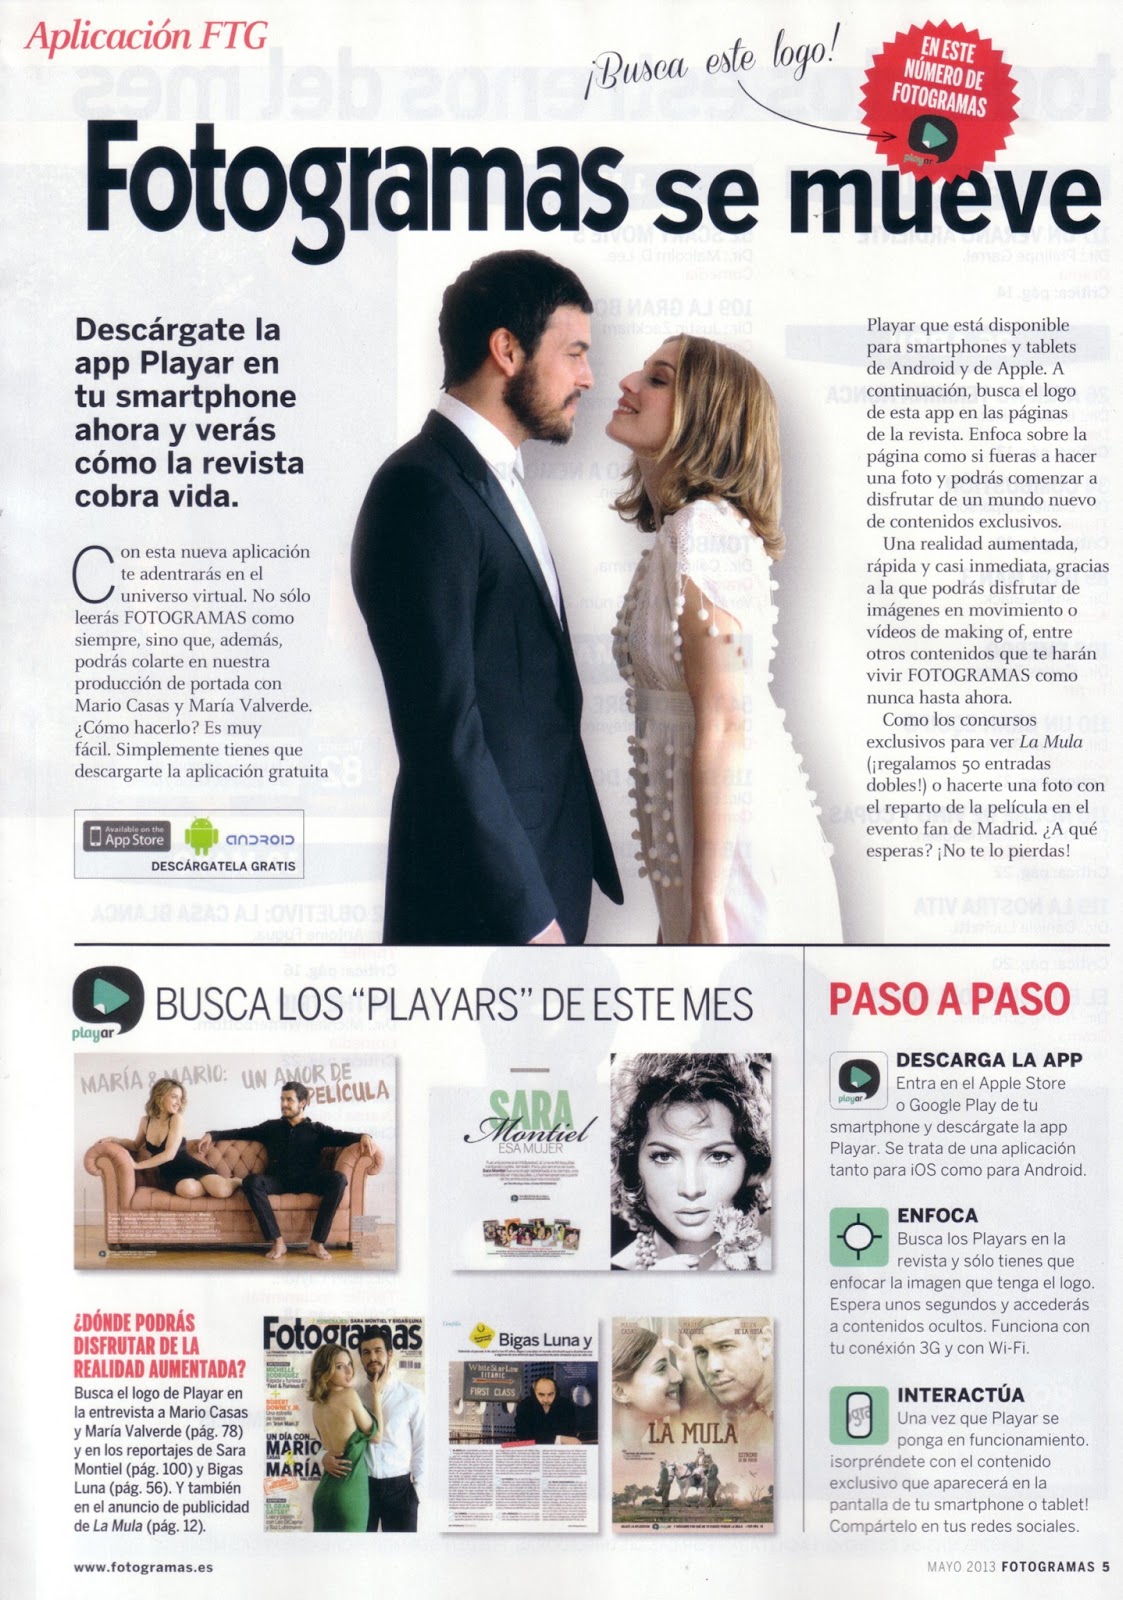 Mario Casas: Mario Casas y María Valverde en la revista Fotogramas